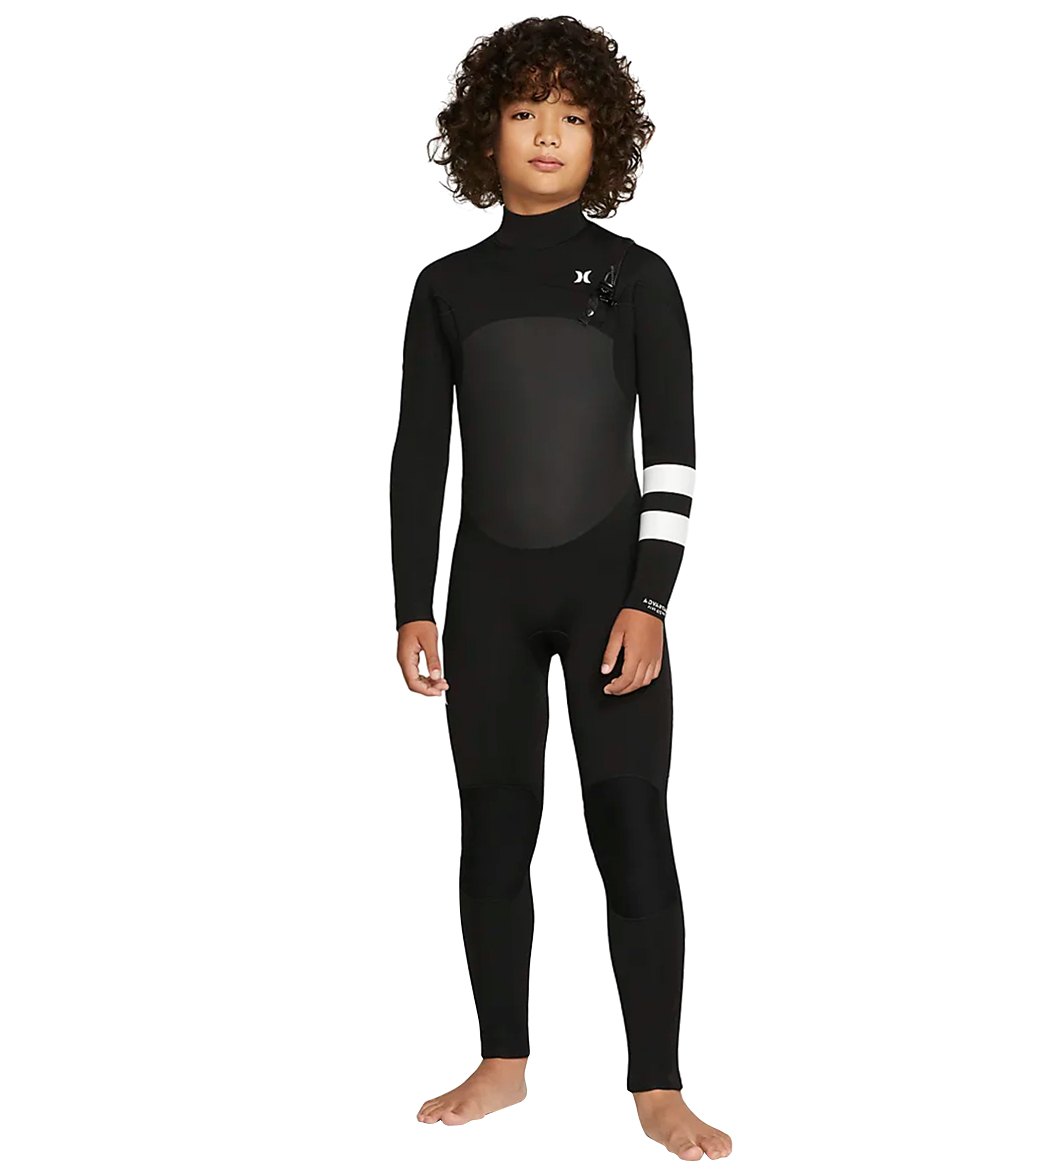 Hurley Boy's Advantage Plus 4/3 Wetsuit at SwimOutlet.com